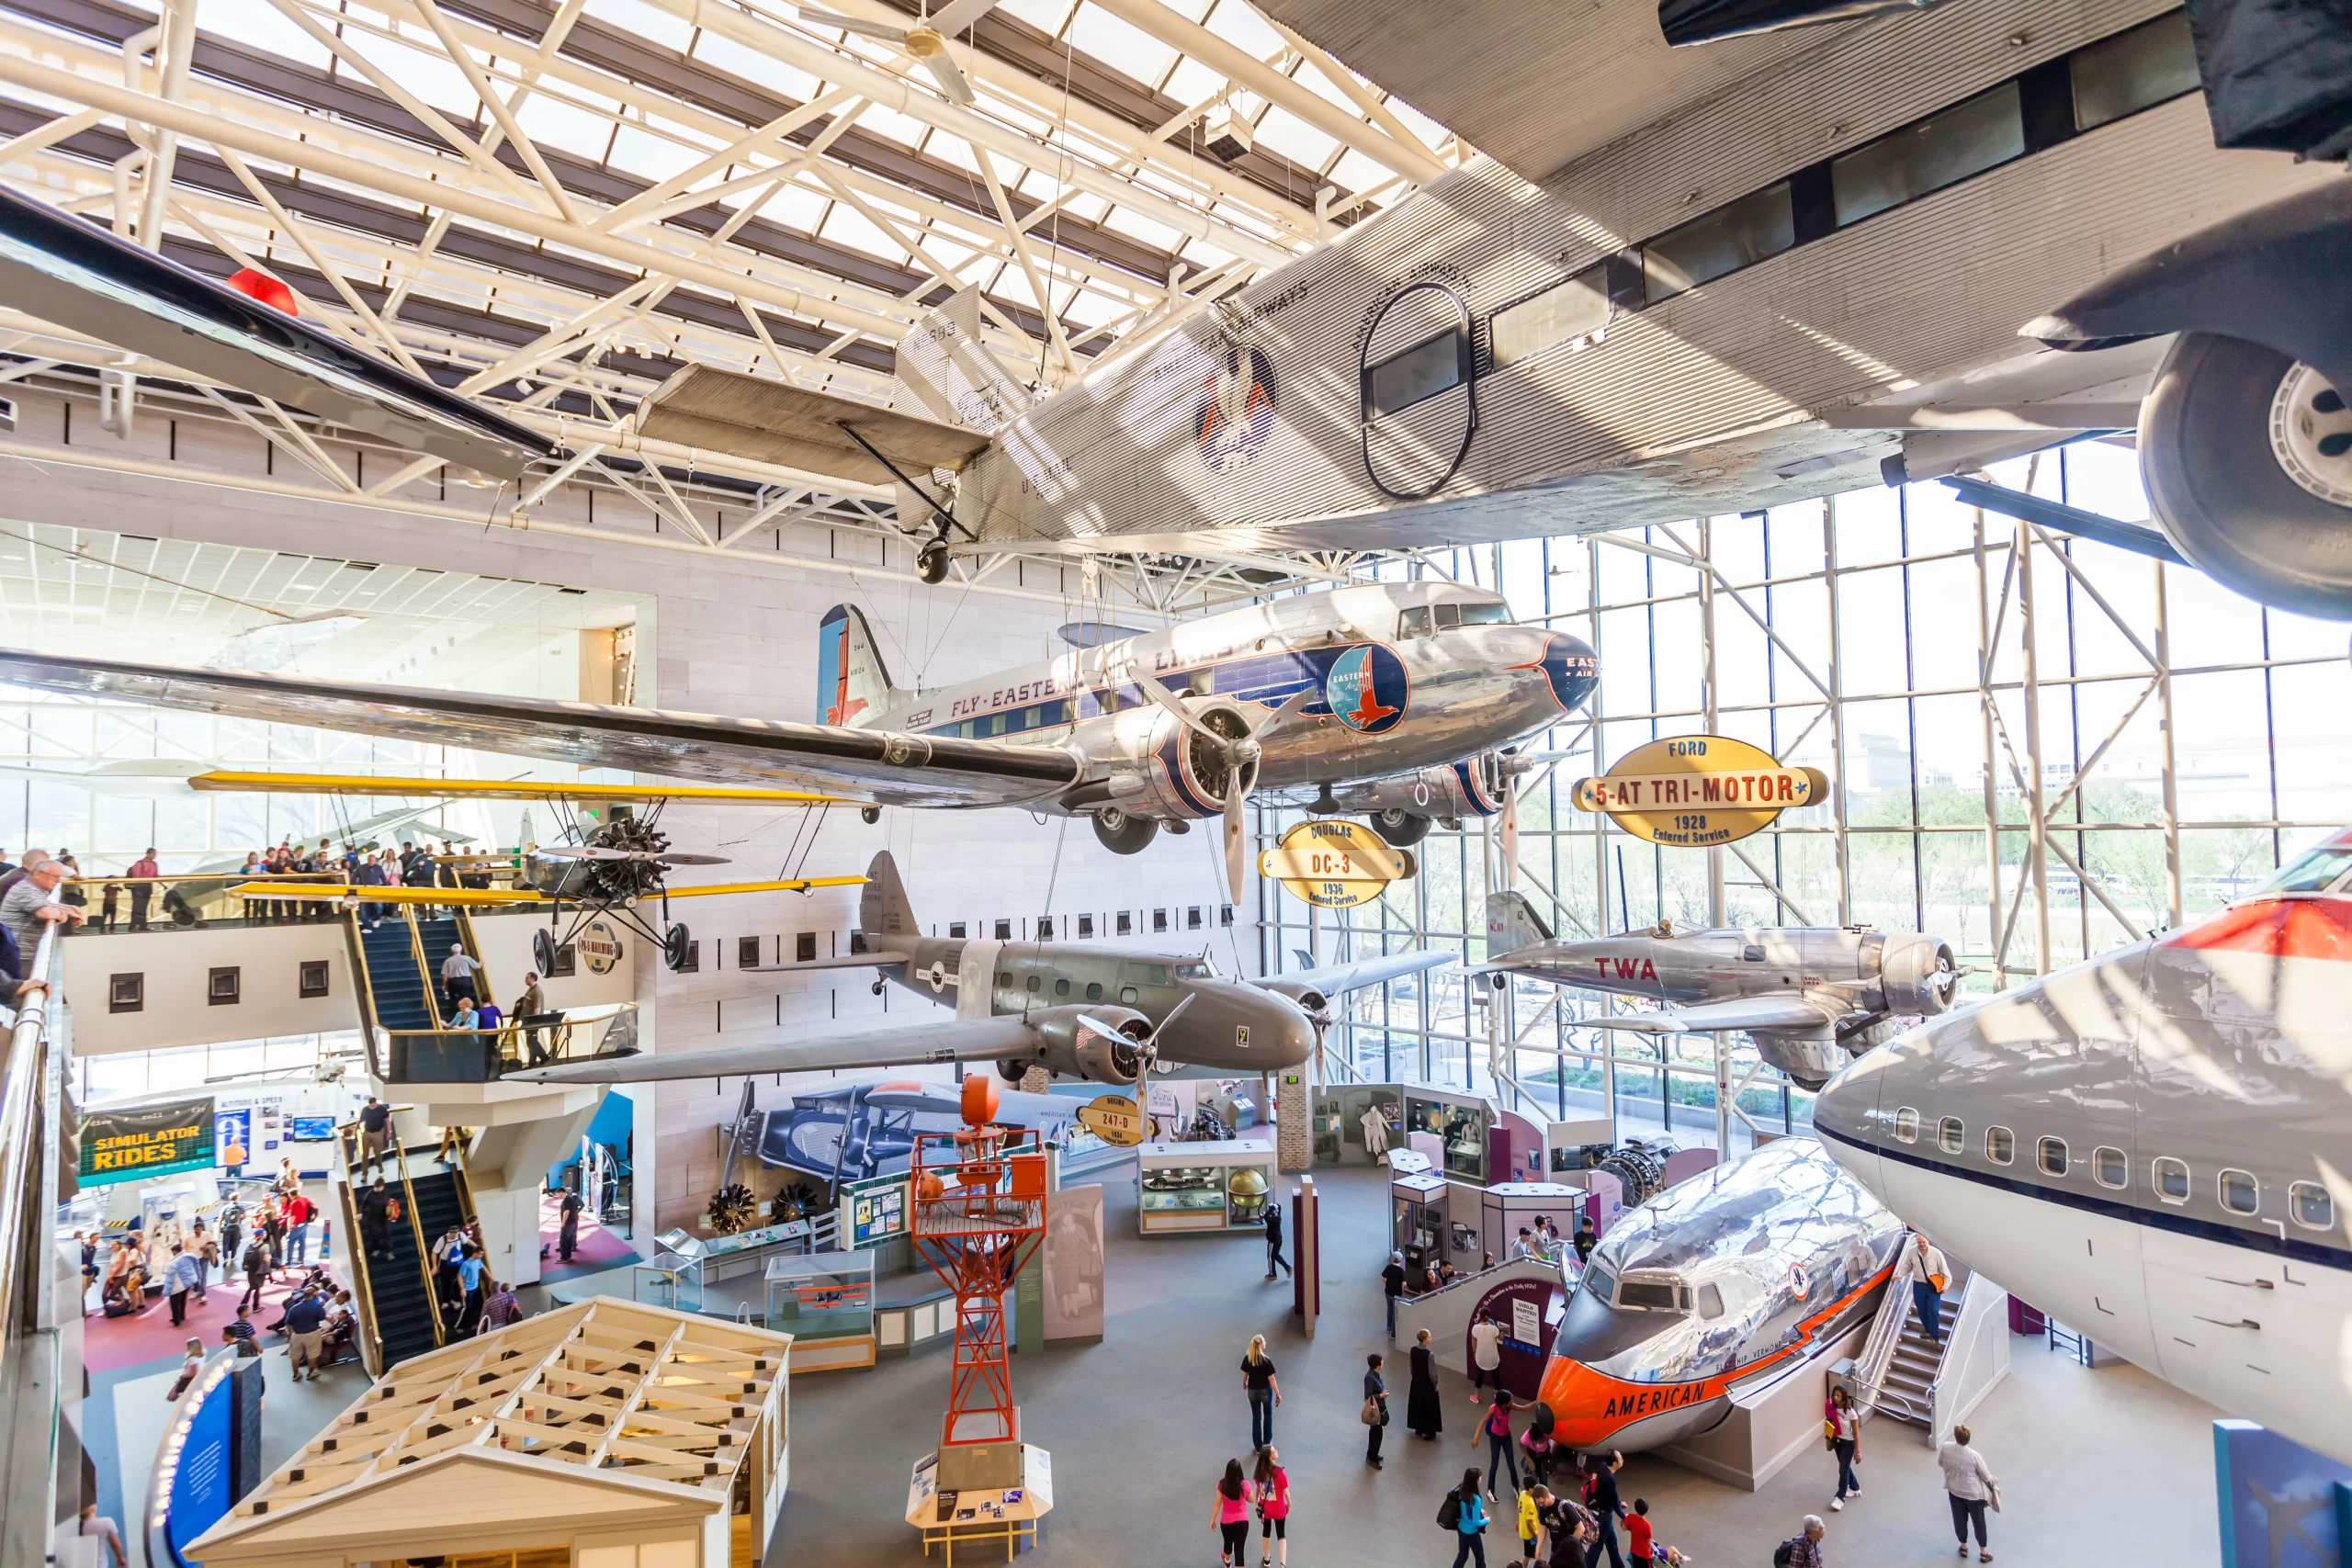 Дубайский музей воздухоплавания - музей, посвященный истории авиации в ОАЭ.